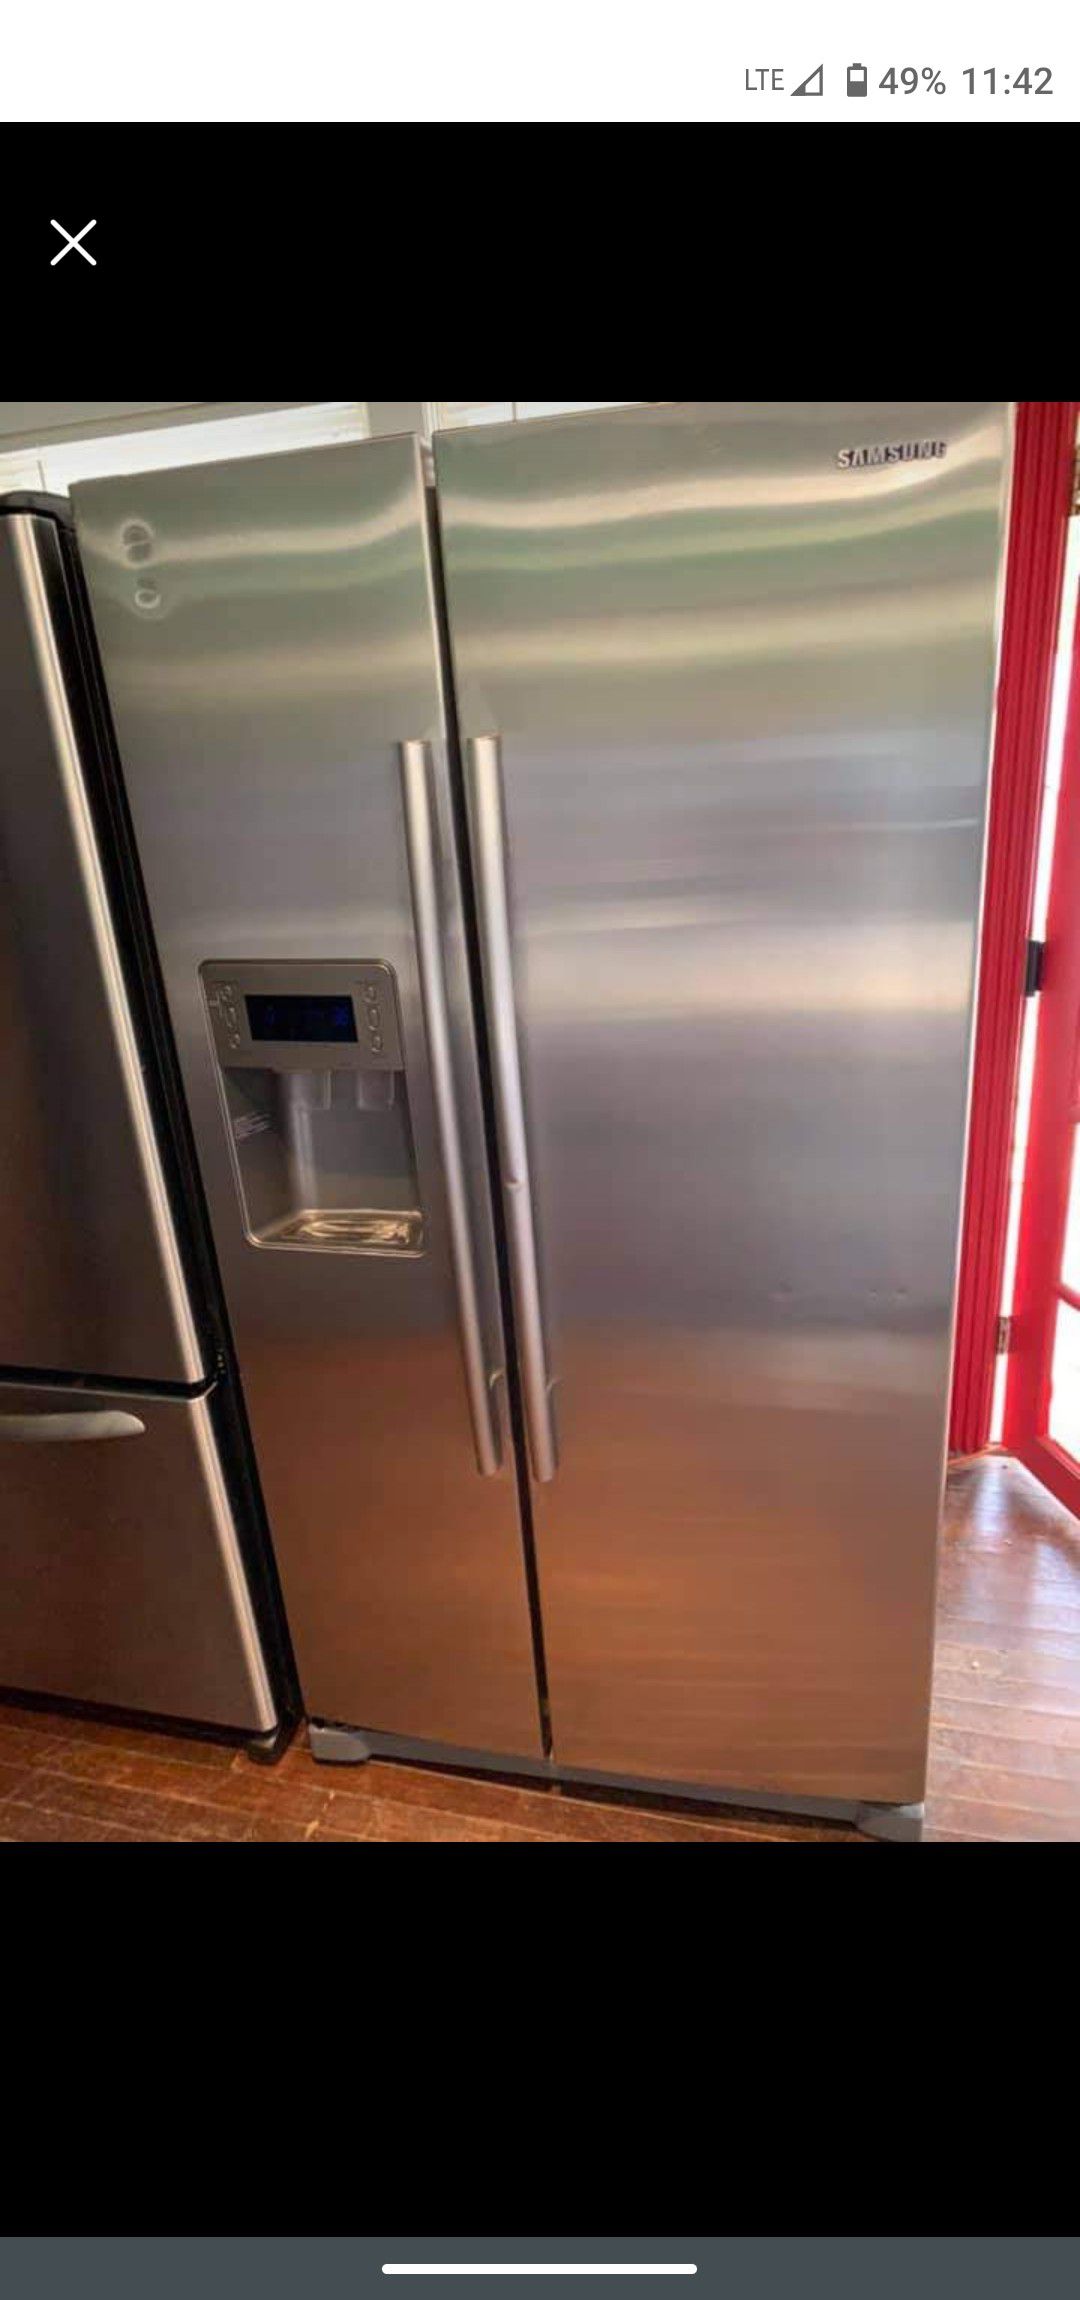 Samsung stainless steel sxs Refrigerator